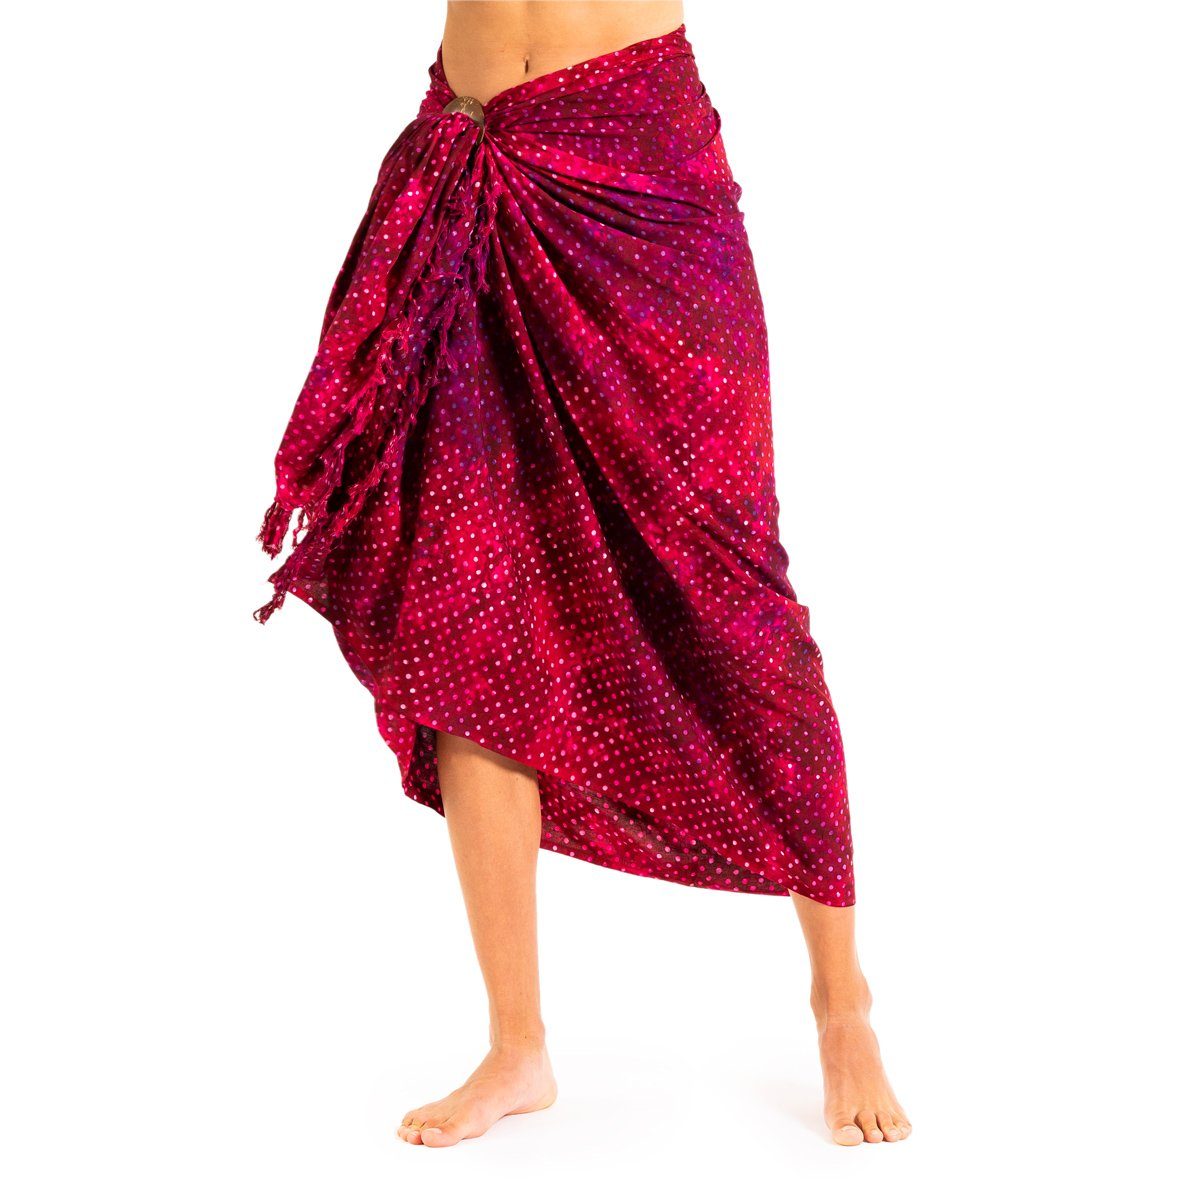 PANASIAM Pareo Sarong Wachsbatik Rottöne aus hochwertiger Viskose Strandtuch, Strandkleid Bikini Cover-up Tuch für den Strand Schultertuch Halstuch B505 red dot